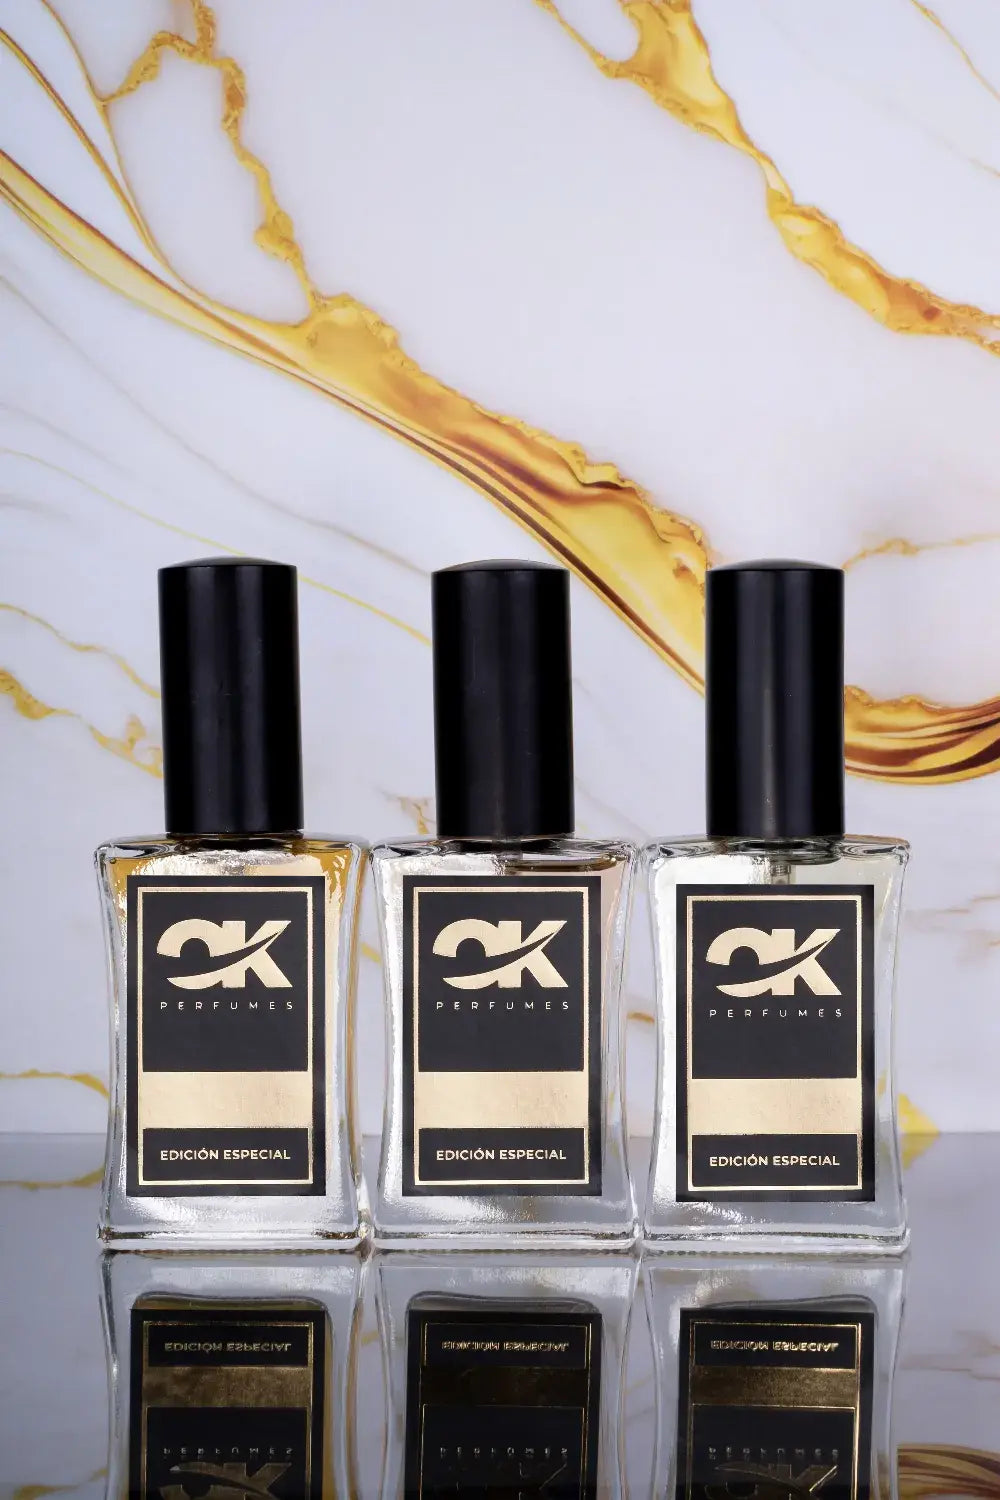 Reflexión Sobre las Equivalencias y el Arte de Crear – OK Perfumes